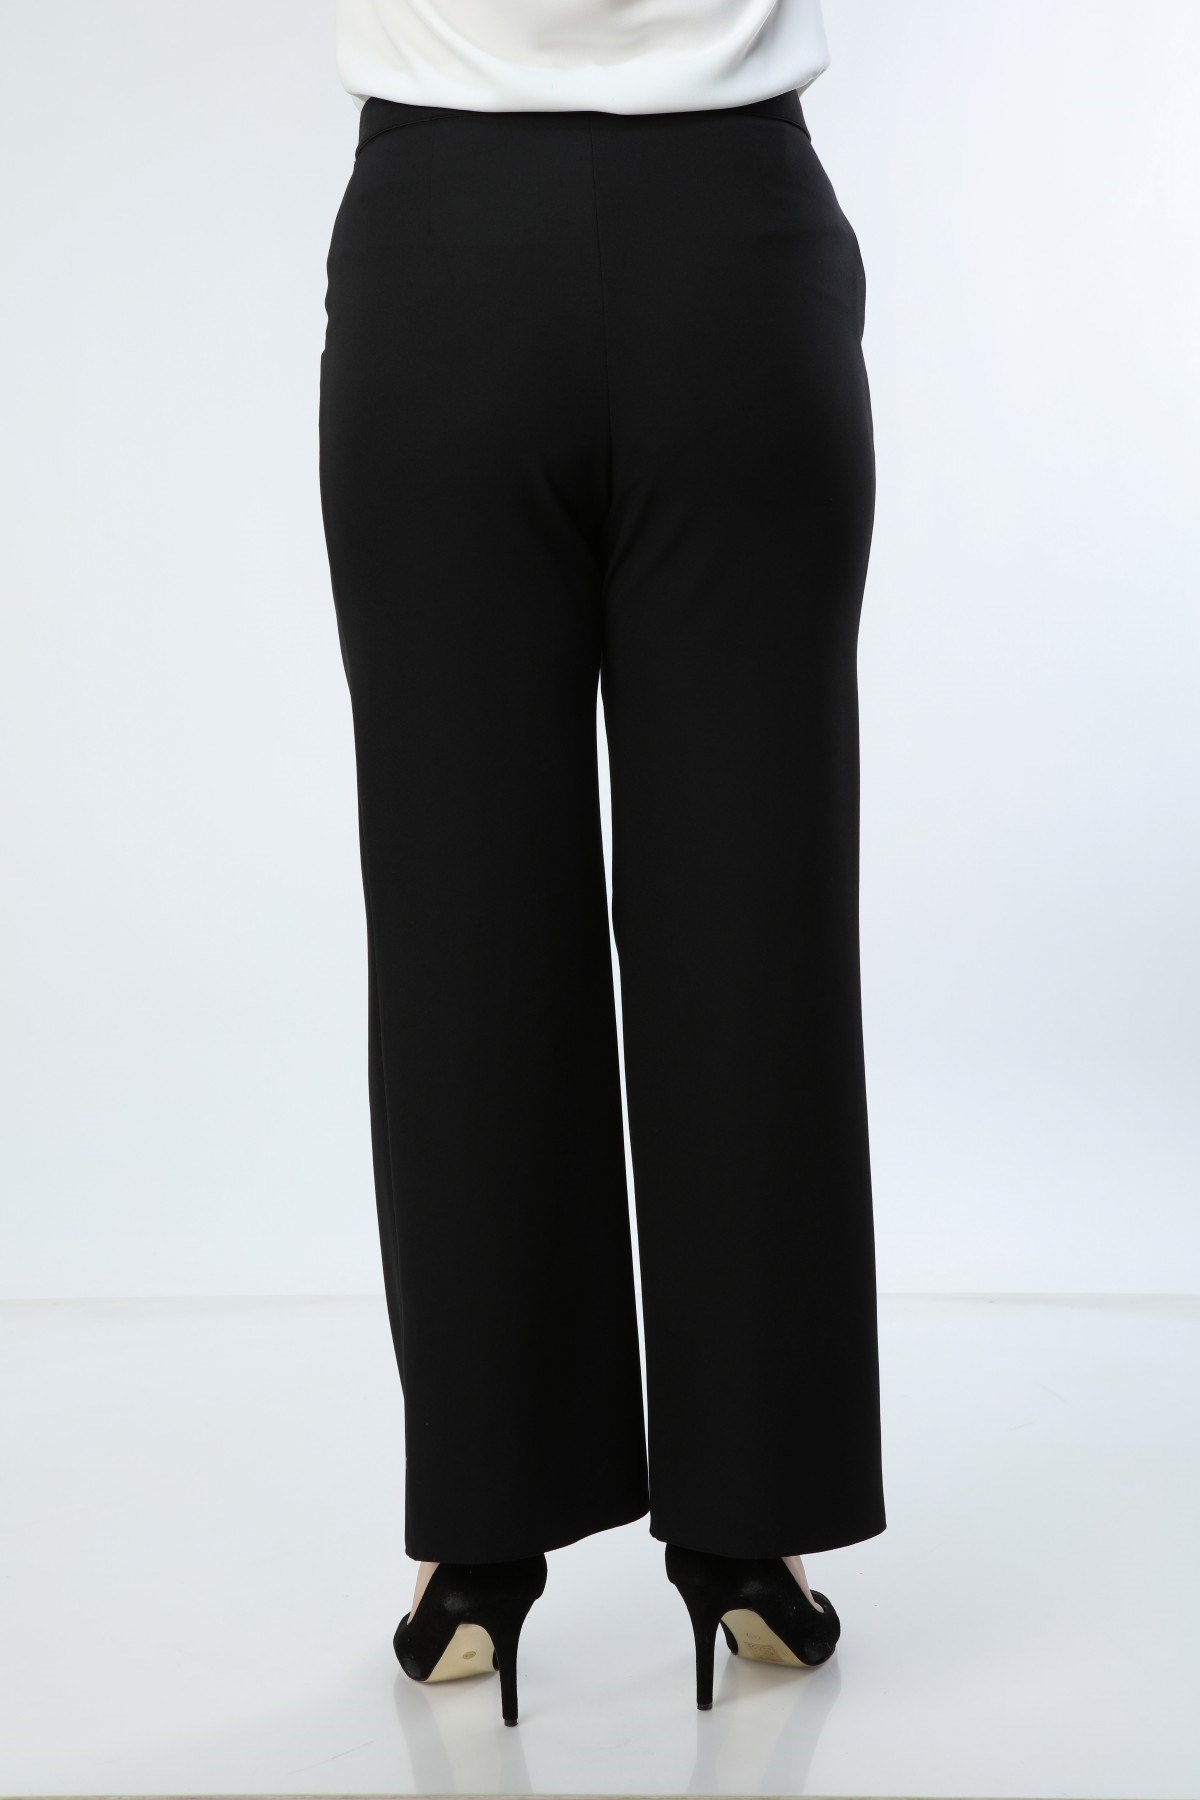 Büyük Beden Geniş Paça Siyah Pantolon - Büyük Beden Pantolon Modelleri